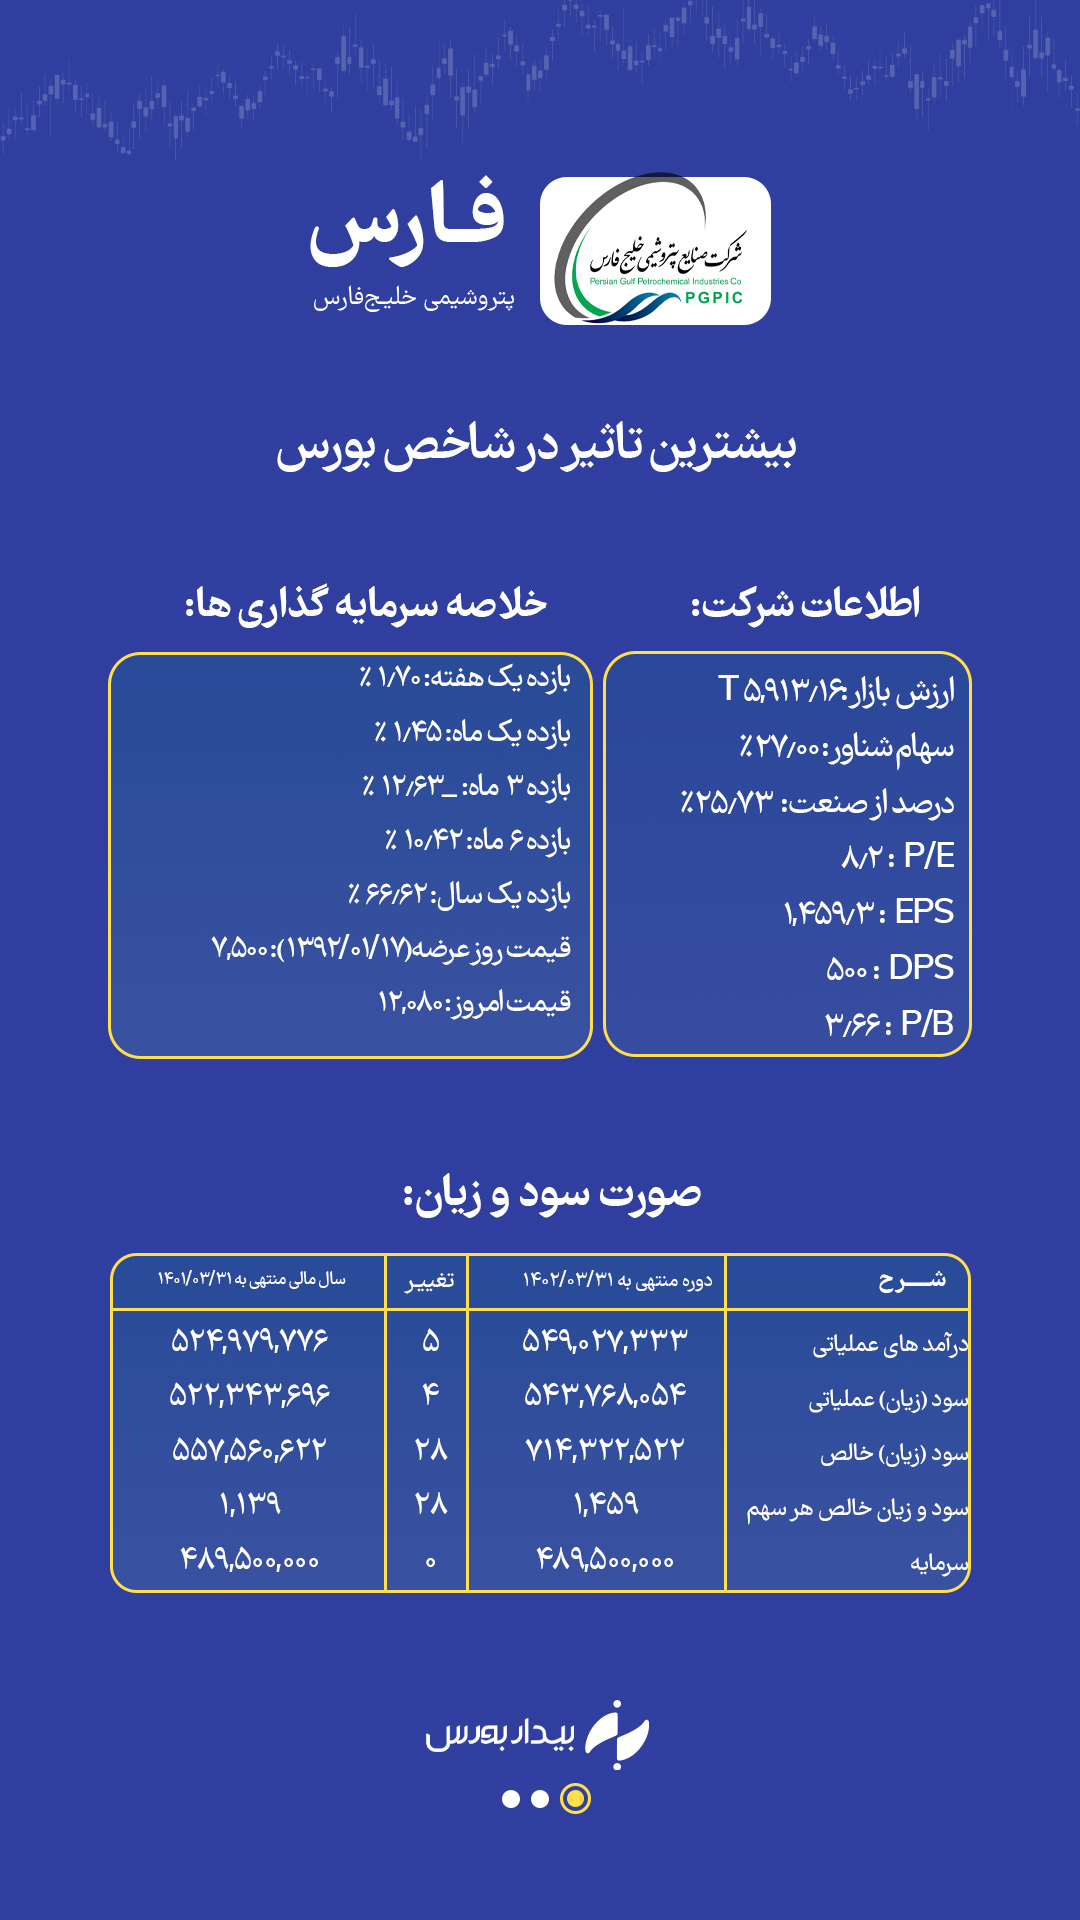 امروز هم خبری از دولت نیامد + تحلیل سهم "فارس"  